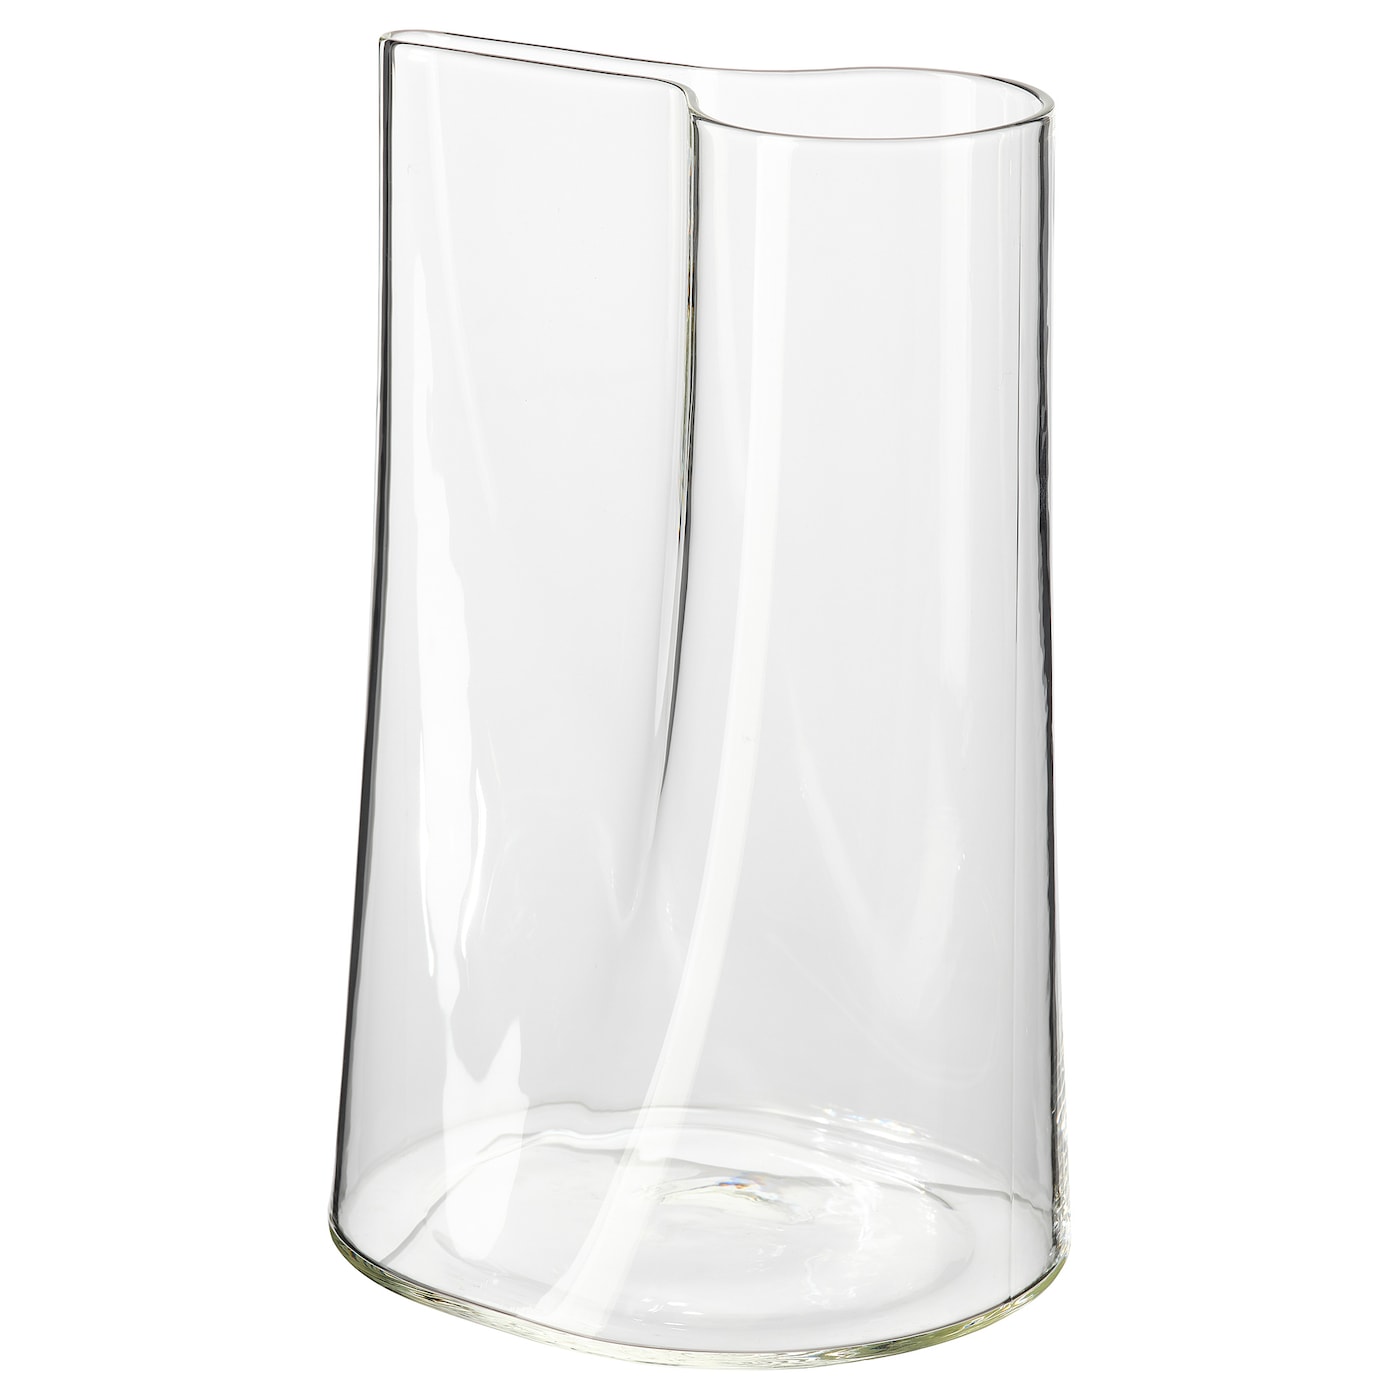 CHILIFRUKT ЧИЛИФРУКТ Ваза/лейка, прозрачное стекло, 21 см IKEA ваза для цветов с годовщиной